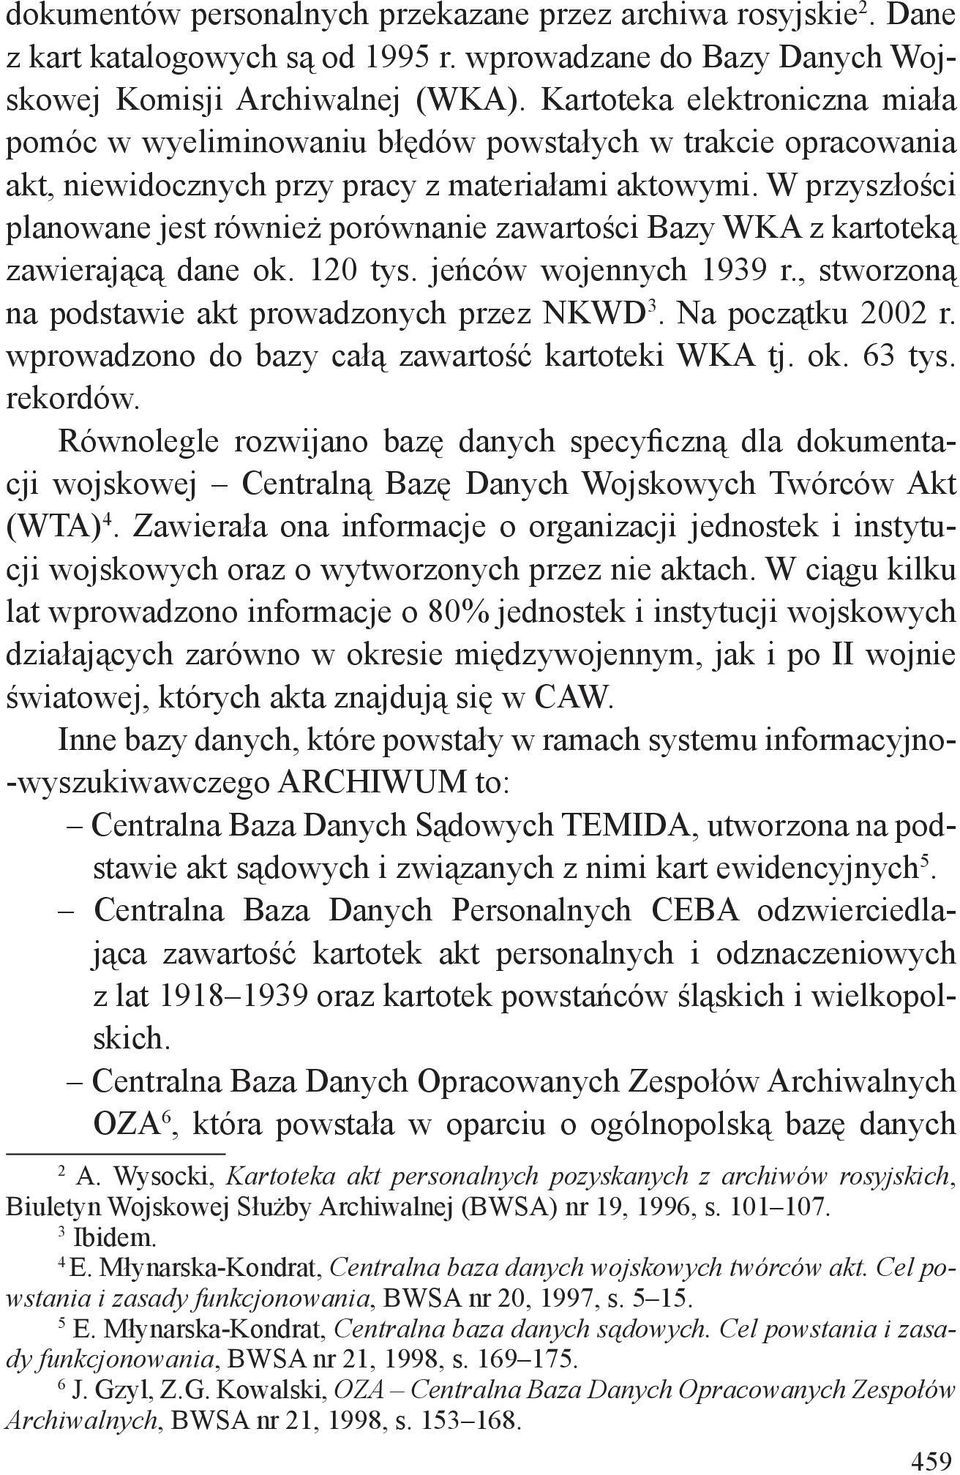 W przyszłości planowane jest również porównanie zawartości Bazy WKA z kartoteką zawierającą dane ok. 120 tys. jeńców wojennych 1939 r., stworzoną na podstawie akt prowadzonych przez NKWD 3.